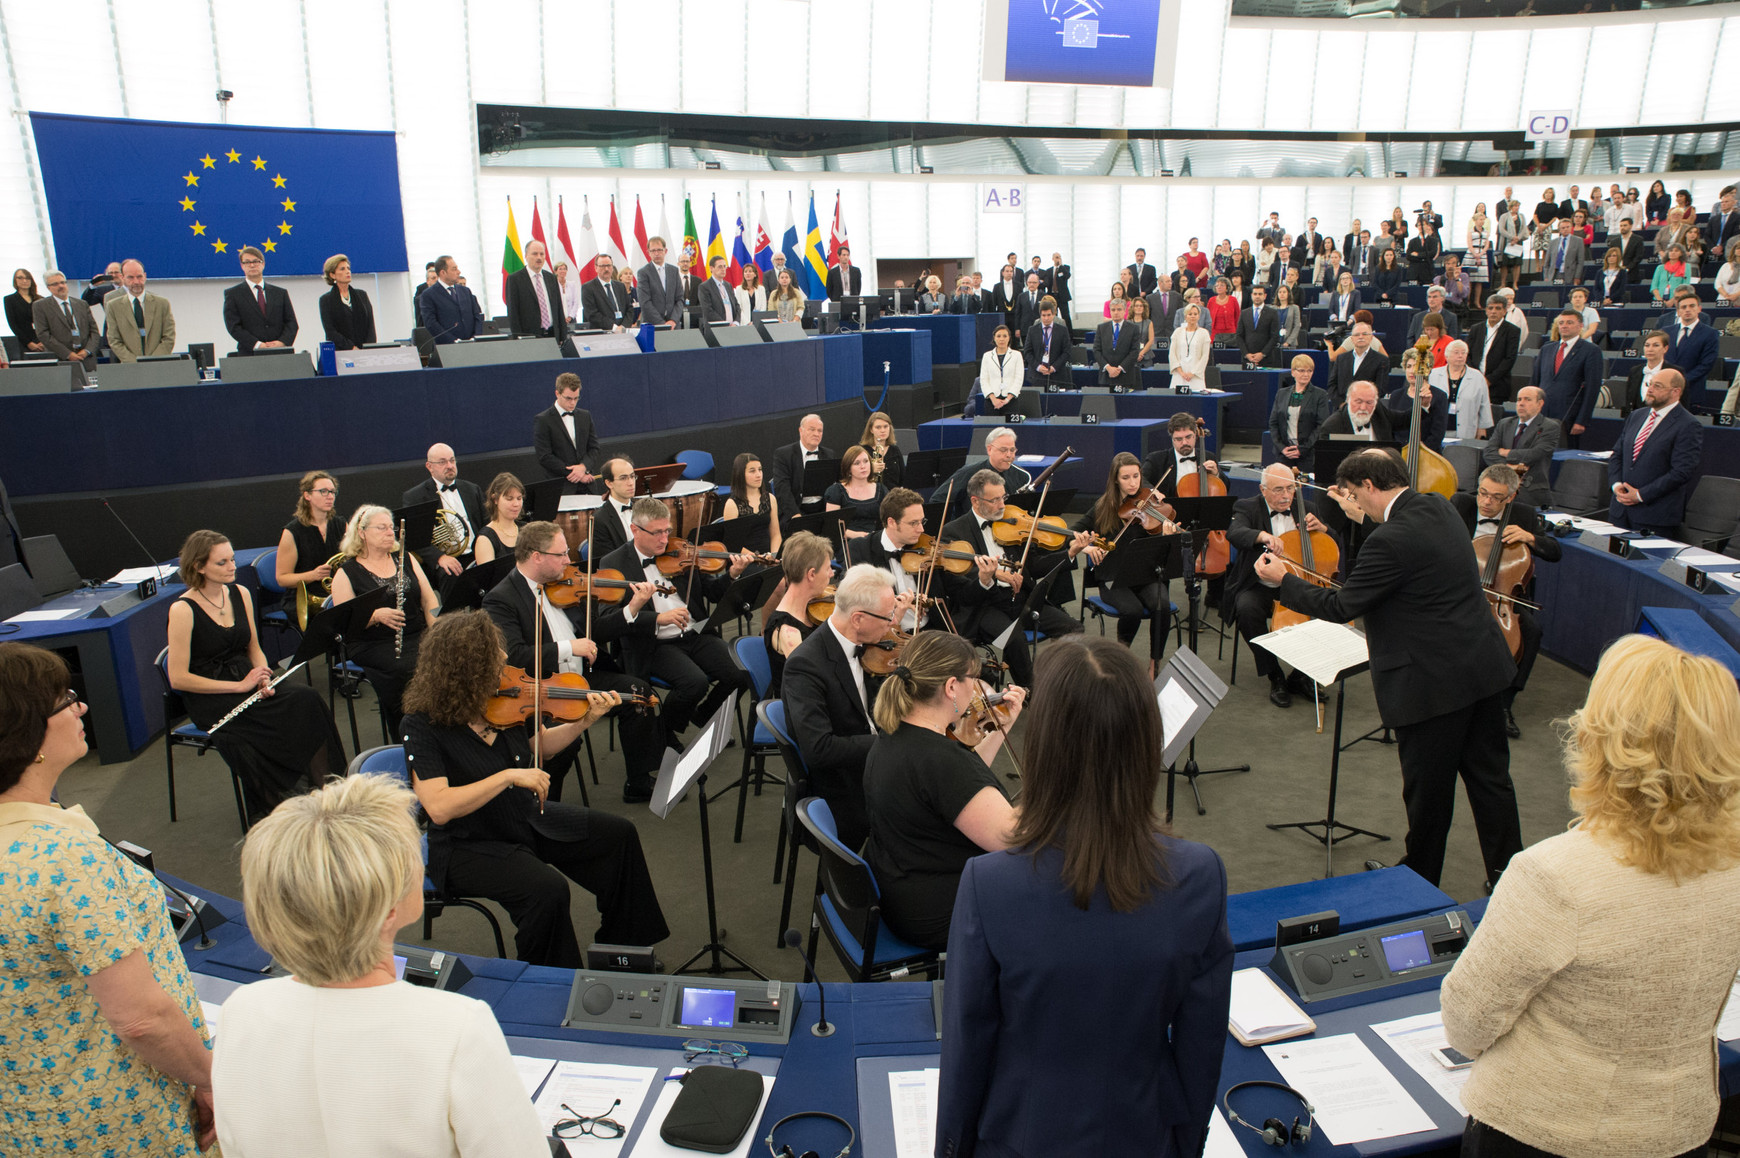 © European Union 2014 - Source : EP ©Michel CHRISTEN L'hymne européen : L'histoire cachée